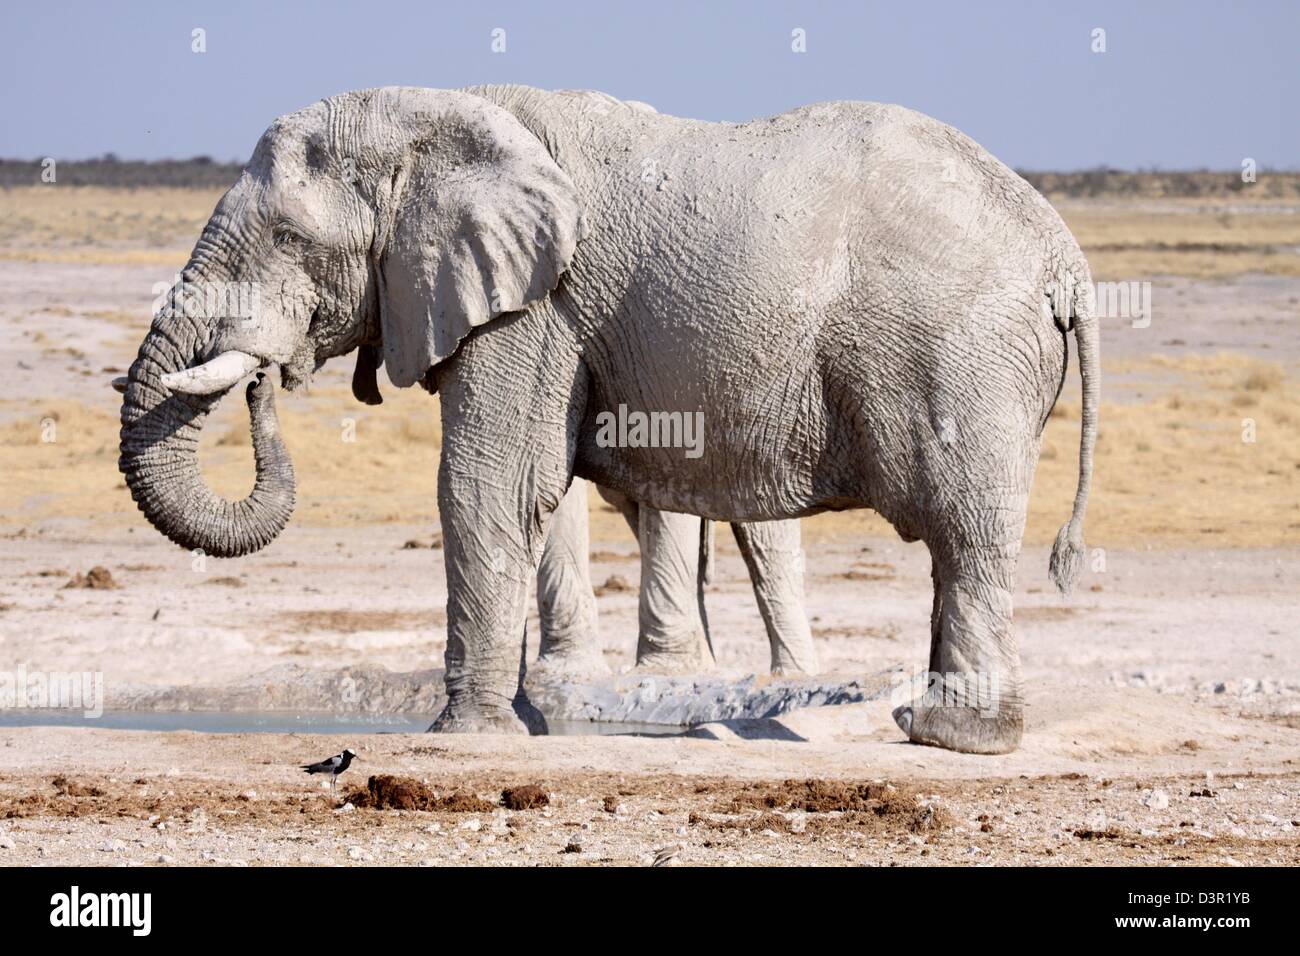 Muddy elephant at a waterhole in Etosha National Park, Namibia Stock Photo